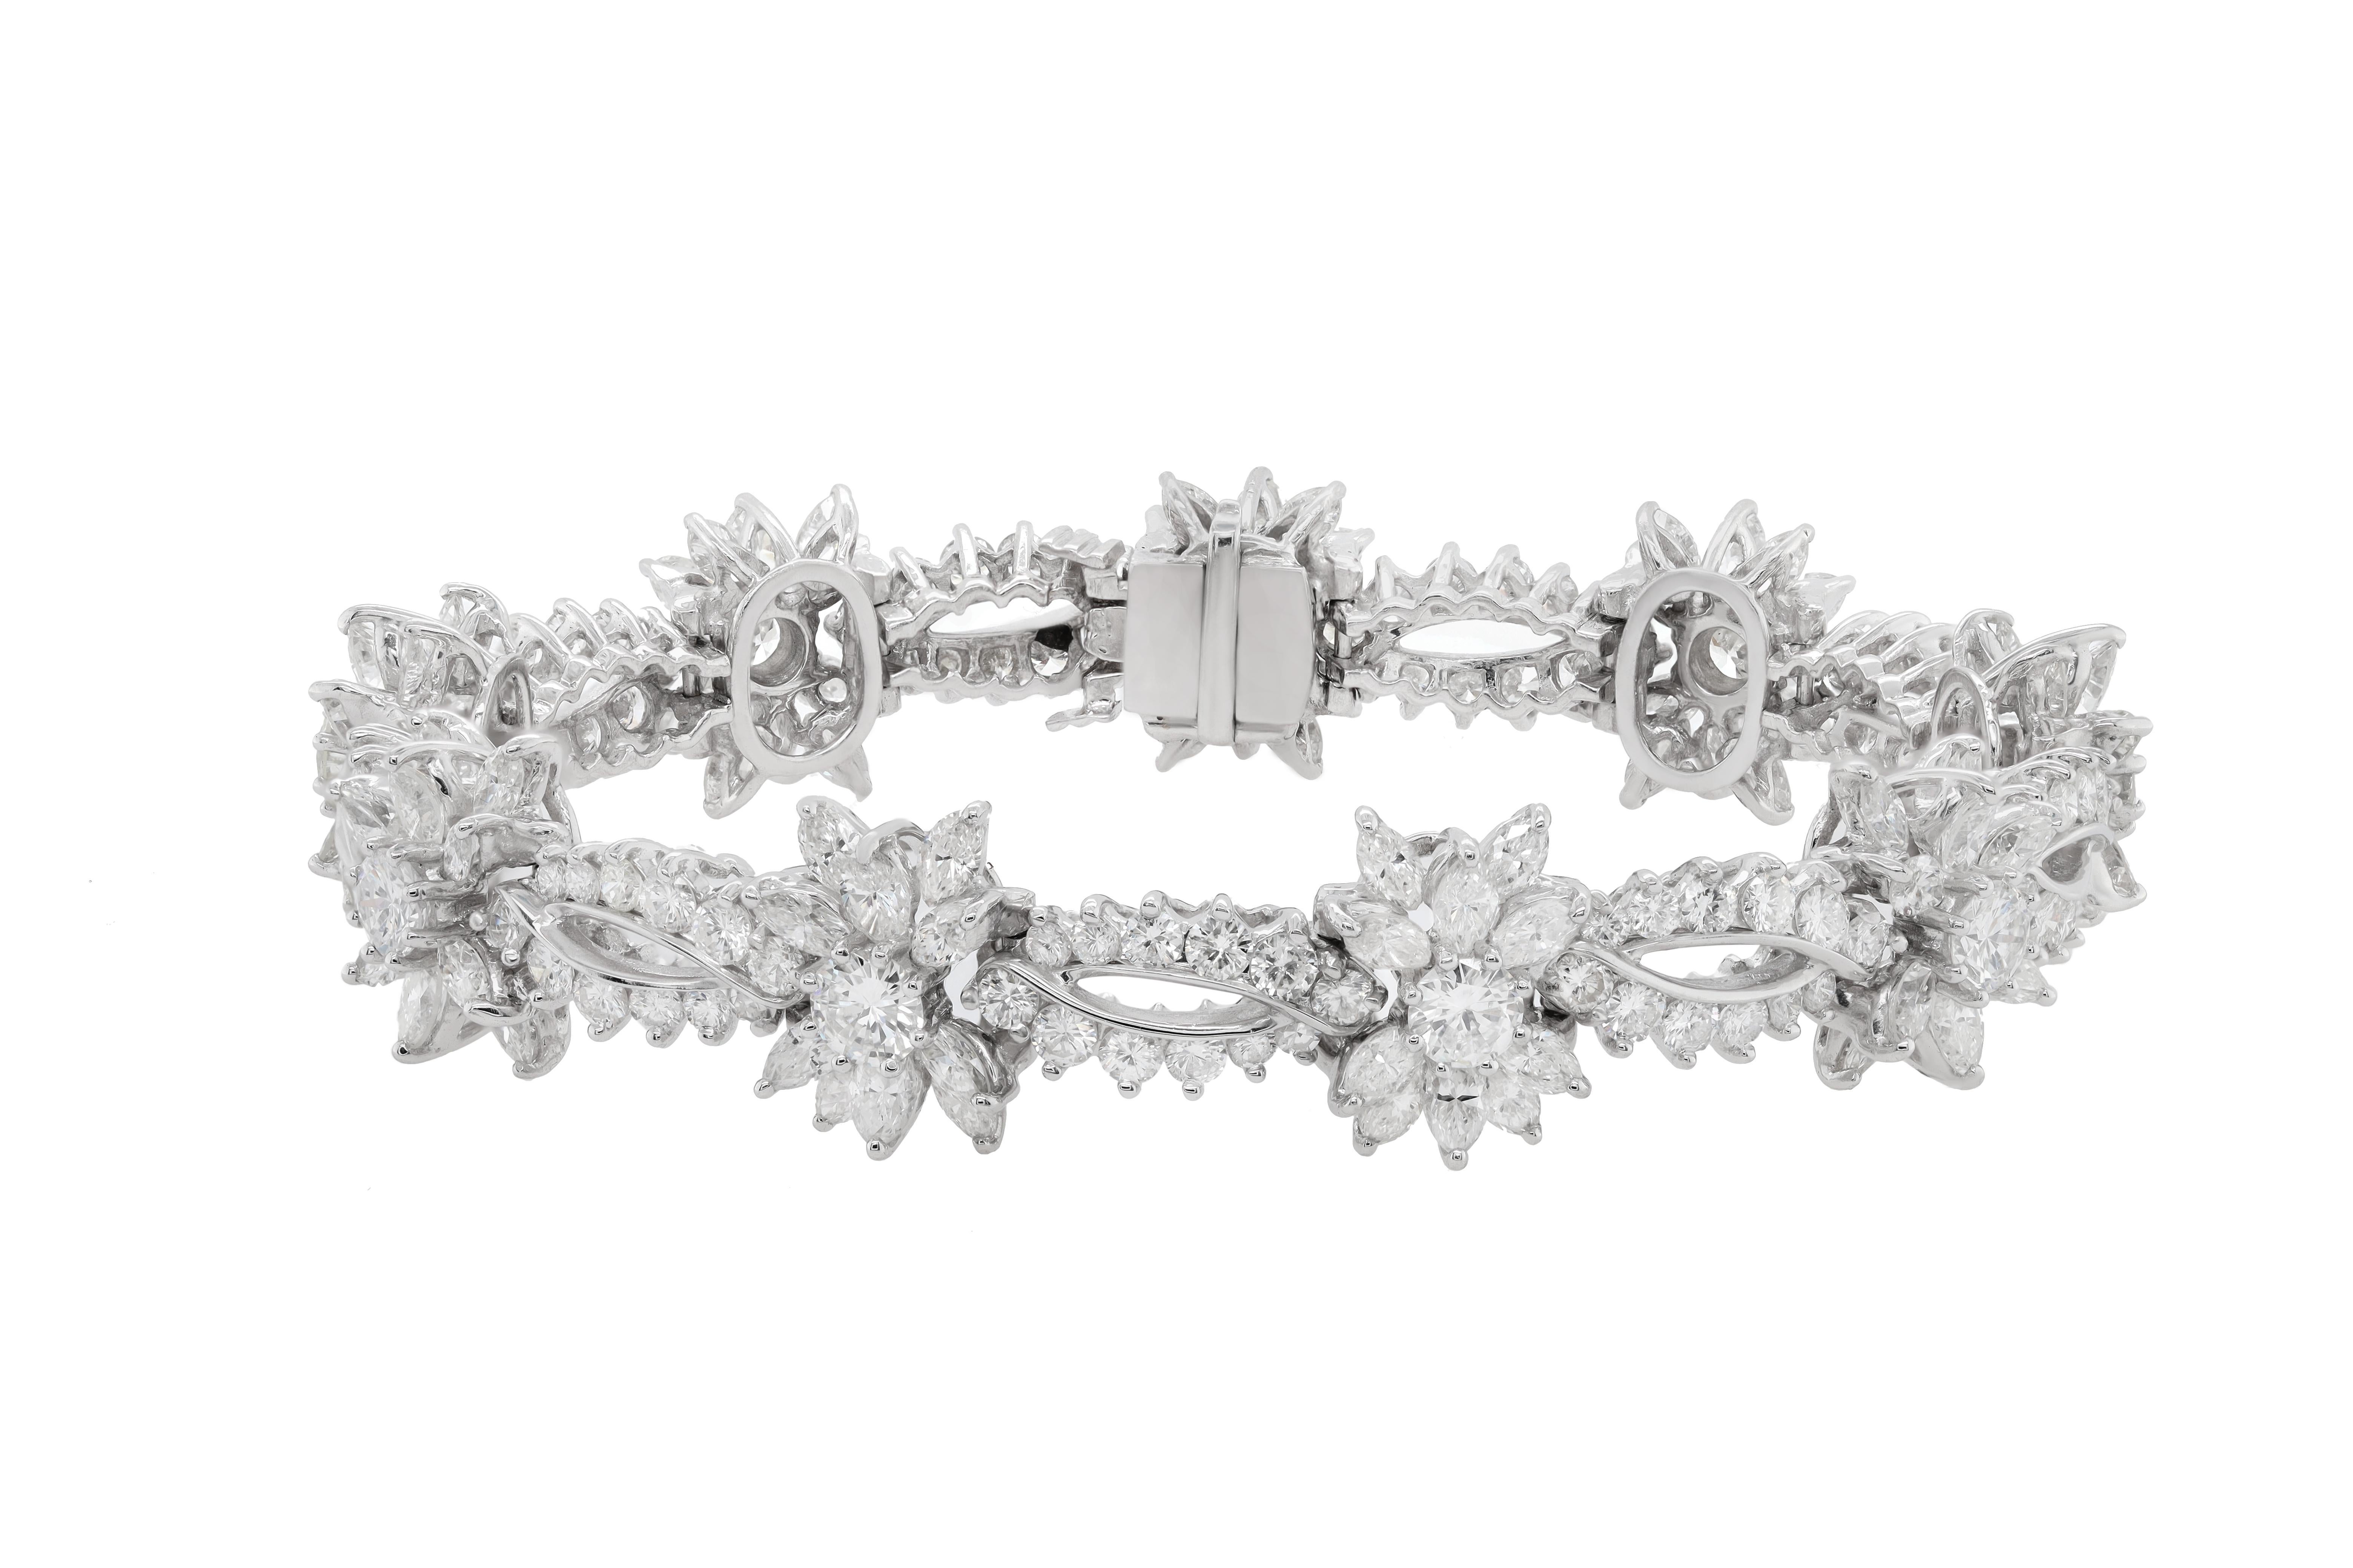 Bracelet de mode en platine orné de flocons de neige totalisant 23,00 cts de diamants marquises et ronds.
A&M est un fournisseur de premier plan de bijoux fins de qualité supérieure depuis plus de 35 ans.
Diana M-One est un magasin unique pour tous